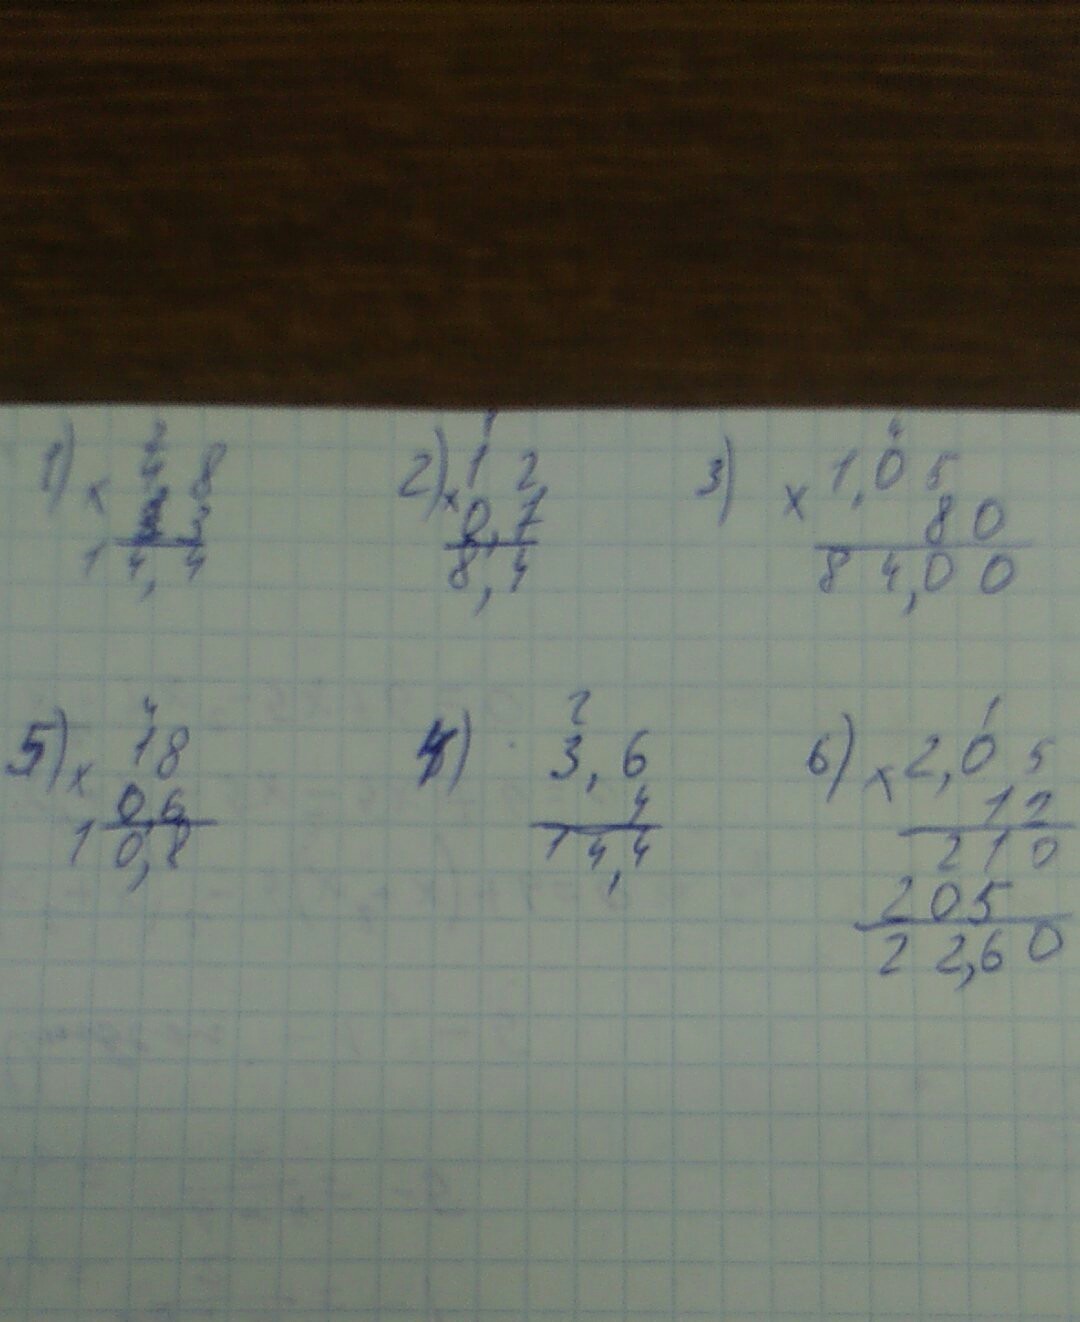 2 5 0.7 4 5 4. 1.5/6-0,5•(-4/3) Решить. (5-2,8)*2,4+1,12:2,6 Столбиком. 2,3-1,5+0,7-0,02 Столбиком. (6,3÷1,4-2,05 решения столбиком.